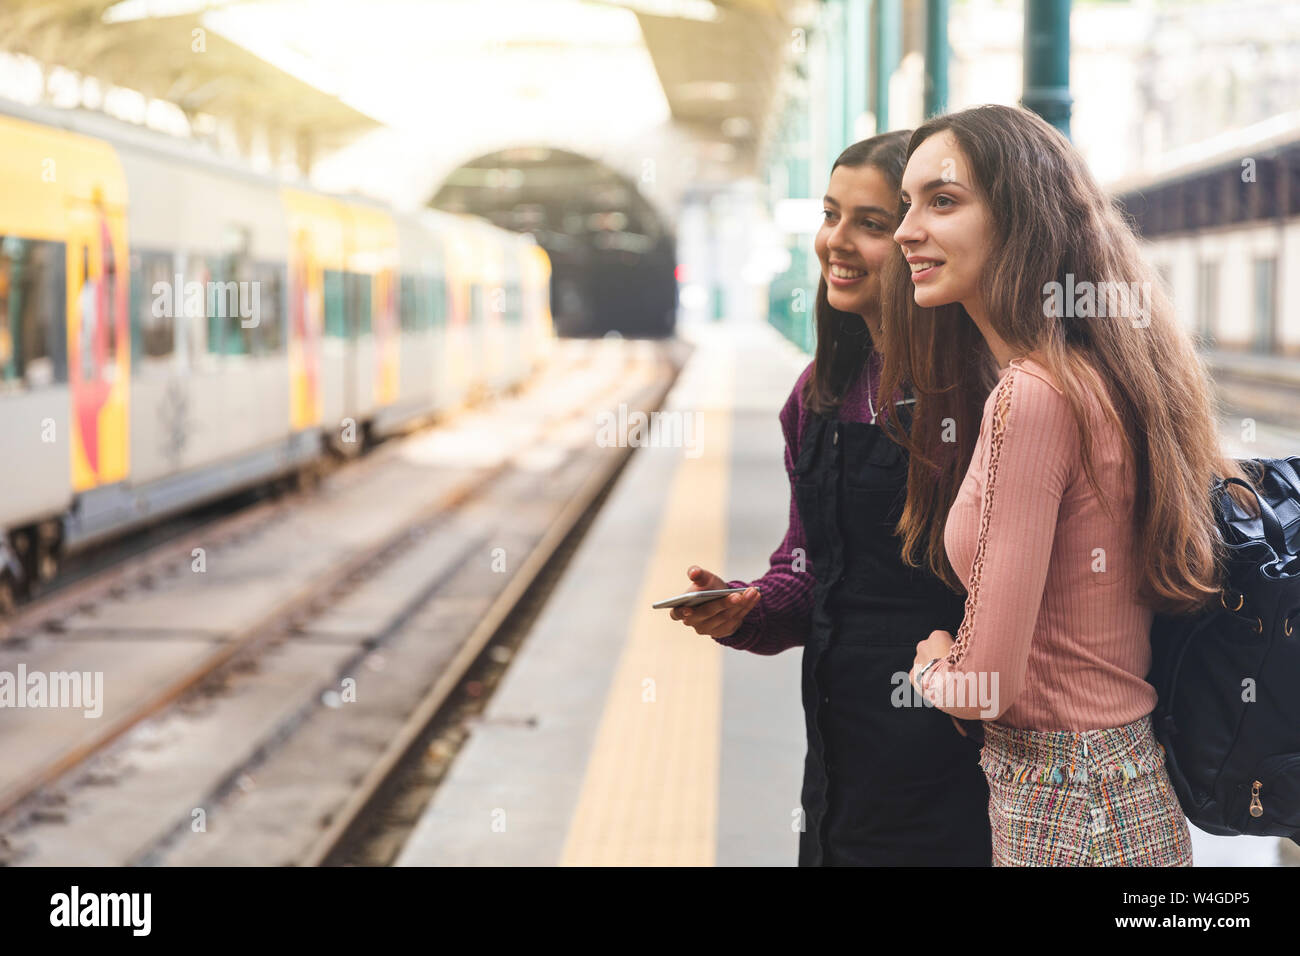 Deux jeunes femmes avec sac à dos et cell phone standing on platform regarder quelque chose, Porto, Portugal Banque D'Images